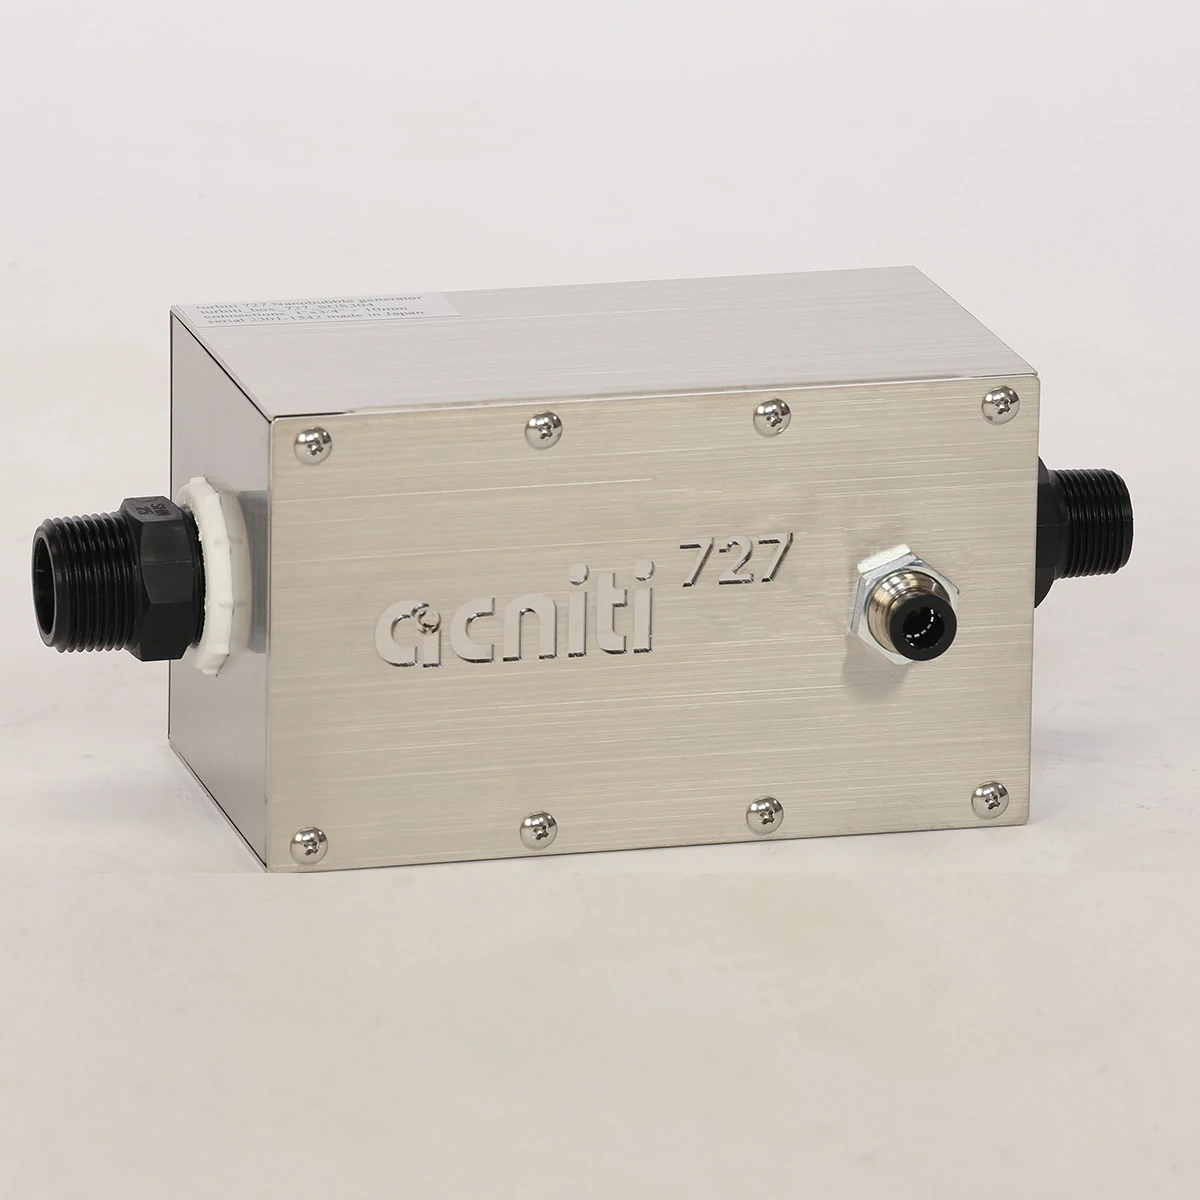 mélangeur de nanobulles acniti nanobubble 727 dans une boîte SUS 304 avec valve unidirectionnelle